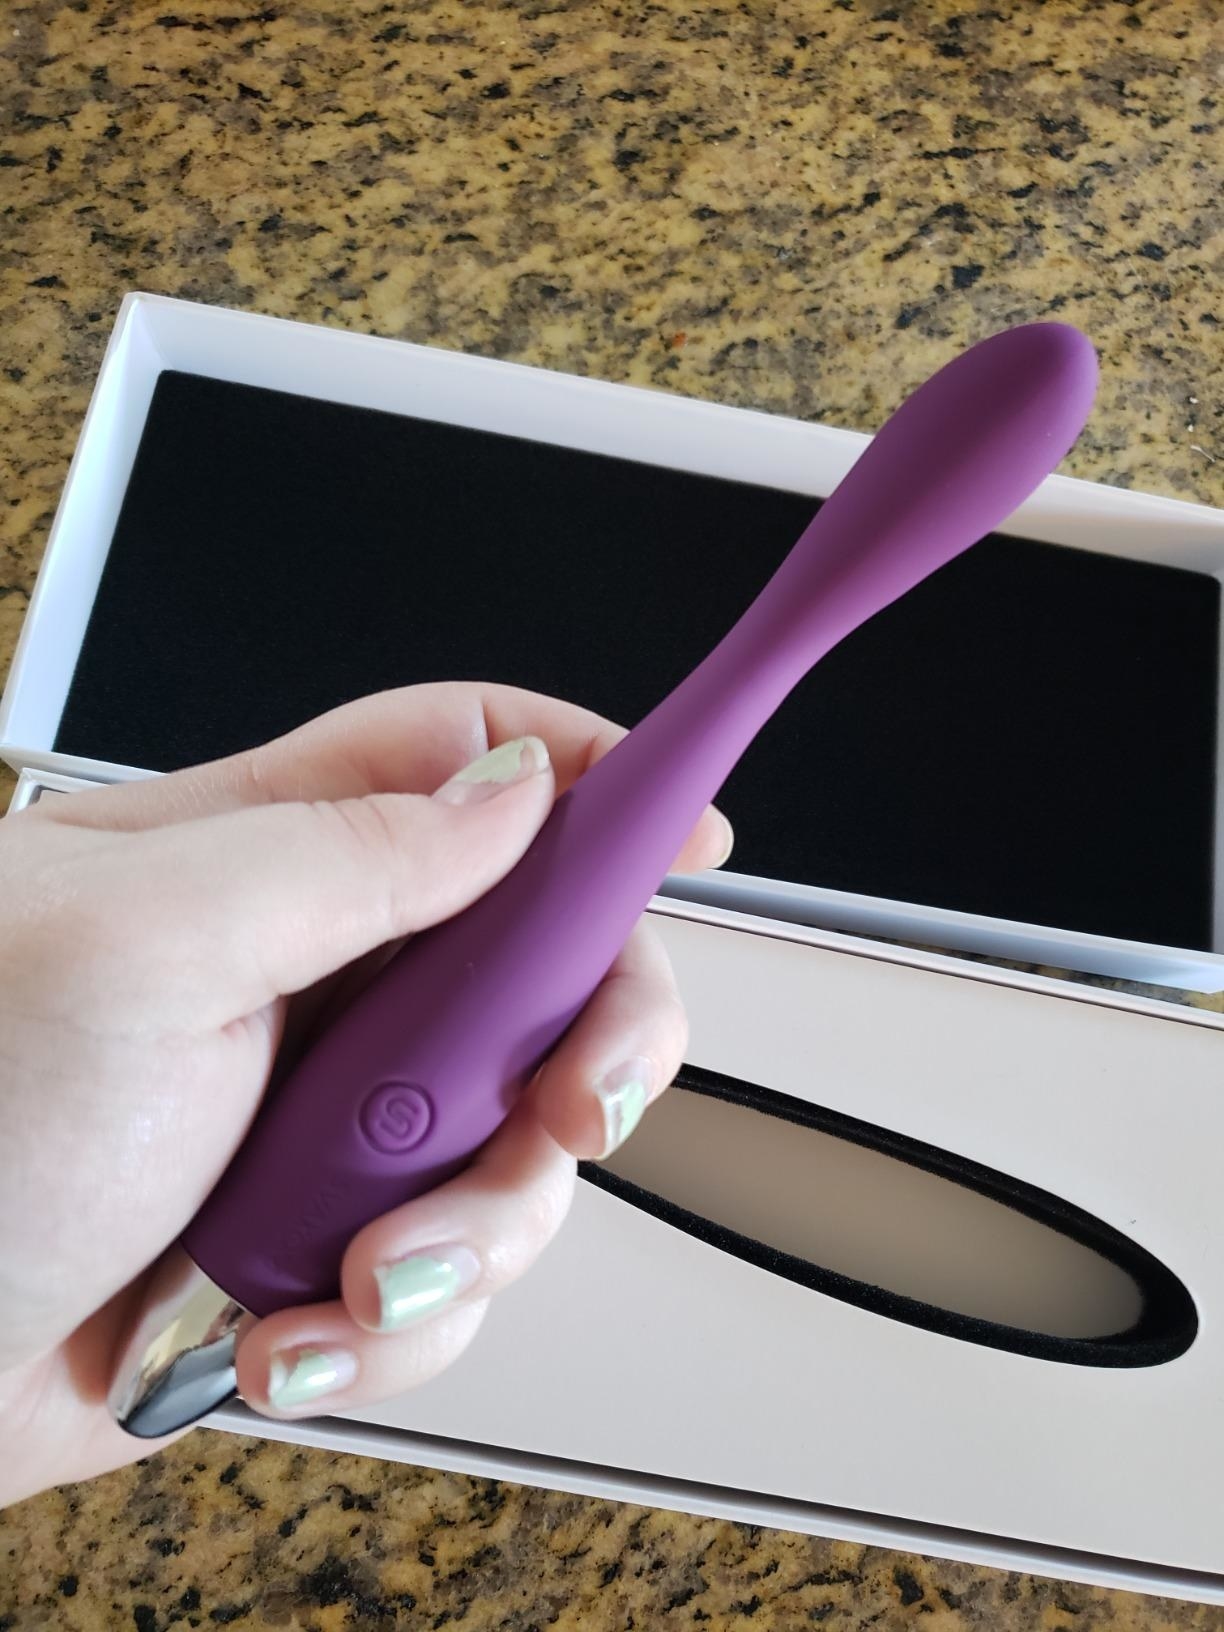 Model holding purple vibrator